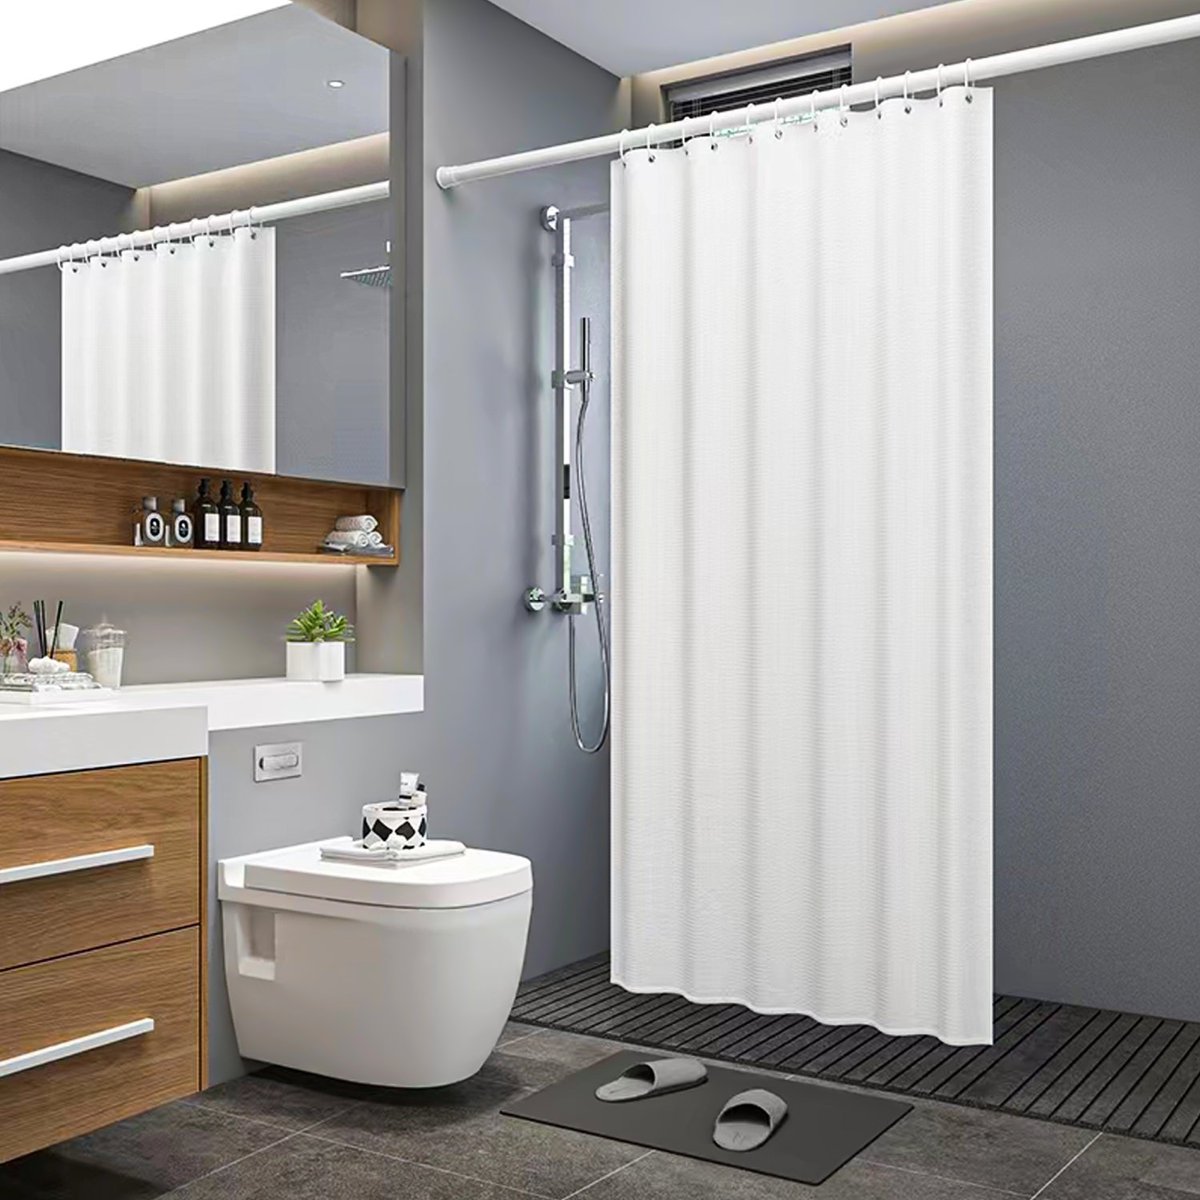 Praktyczna poliestrowa zasłona prysznicowa w kolorze białym - 180 x 200 cm - Zabezpiecza łazienkę przed zachlapaniem podczas kąpieli pod prysznicem